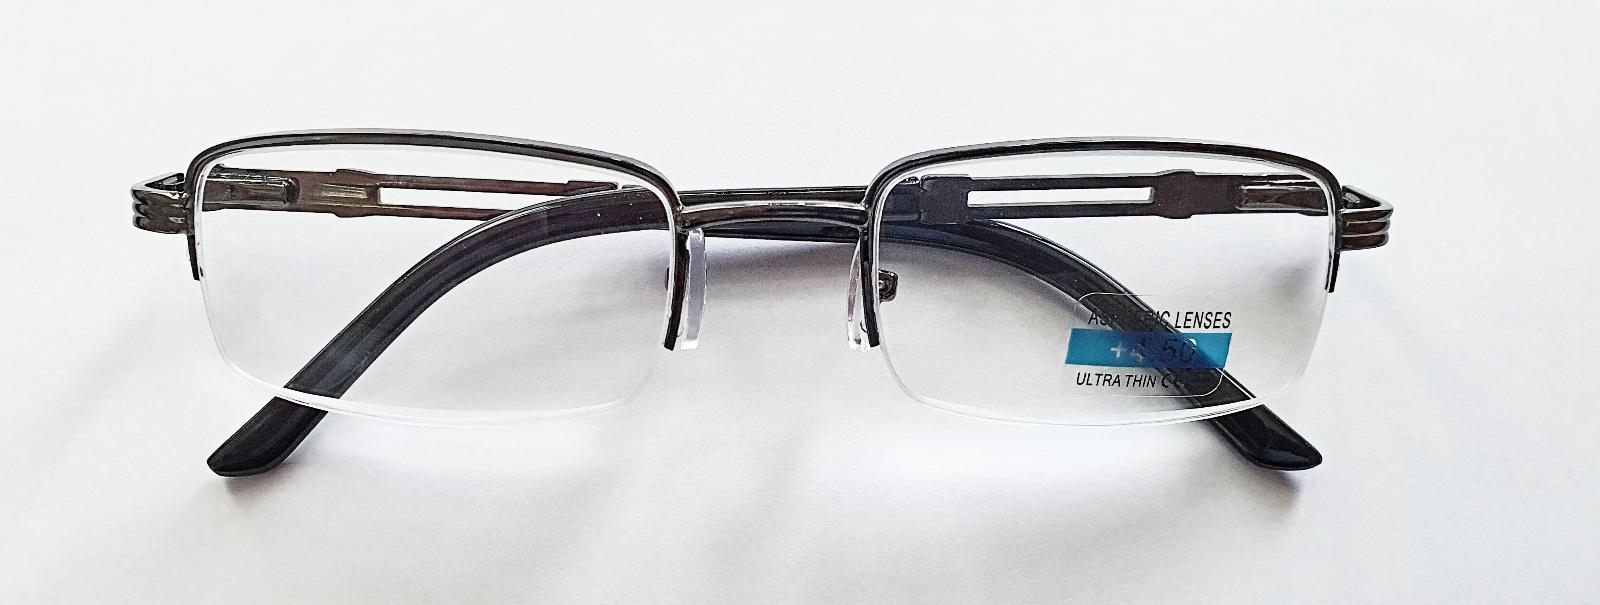 Dioptrické okuliare QiiM RGL M1 čítacie kovové, dioptria +5,0 - Lekáreň a zdravie